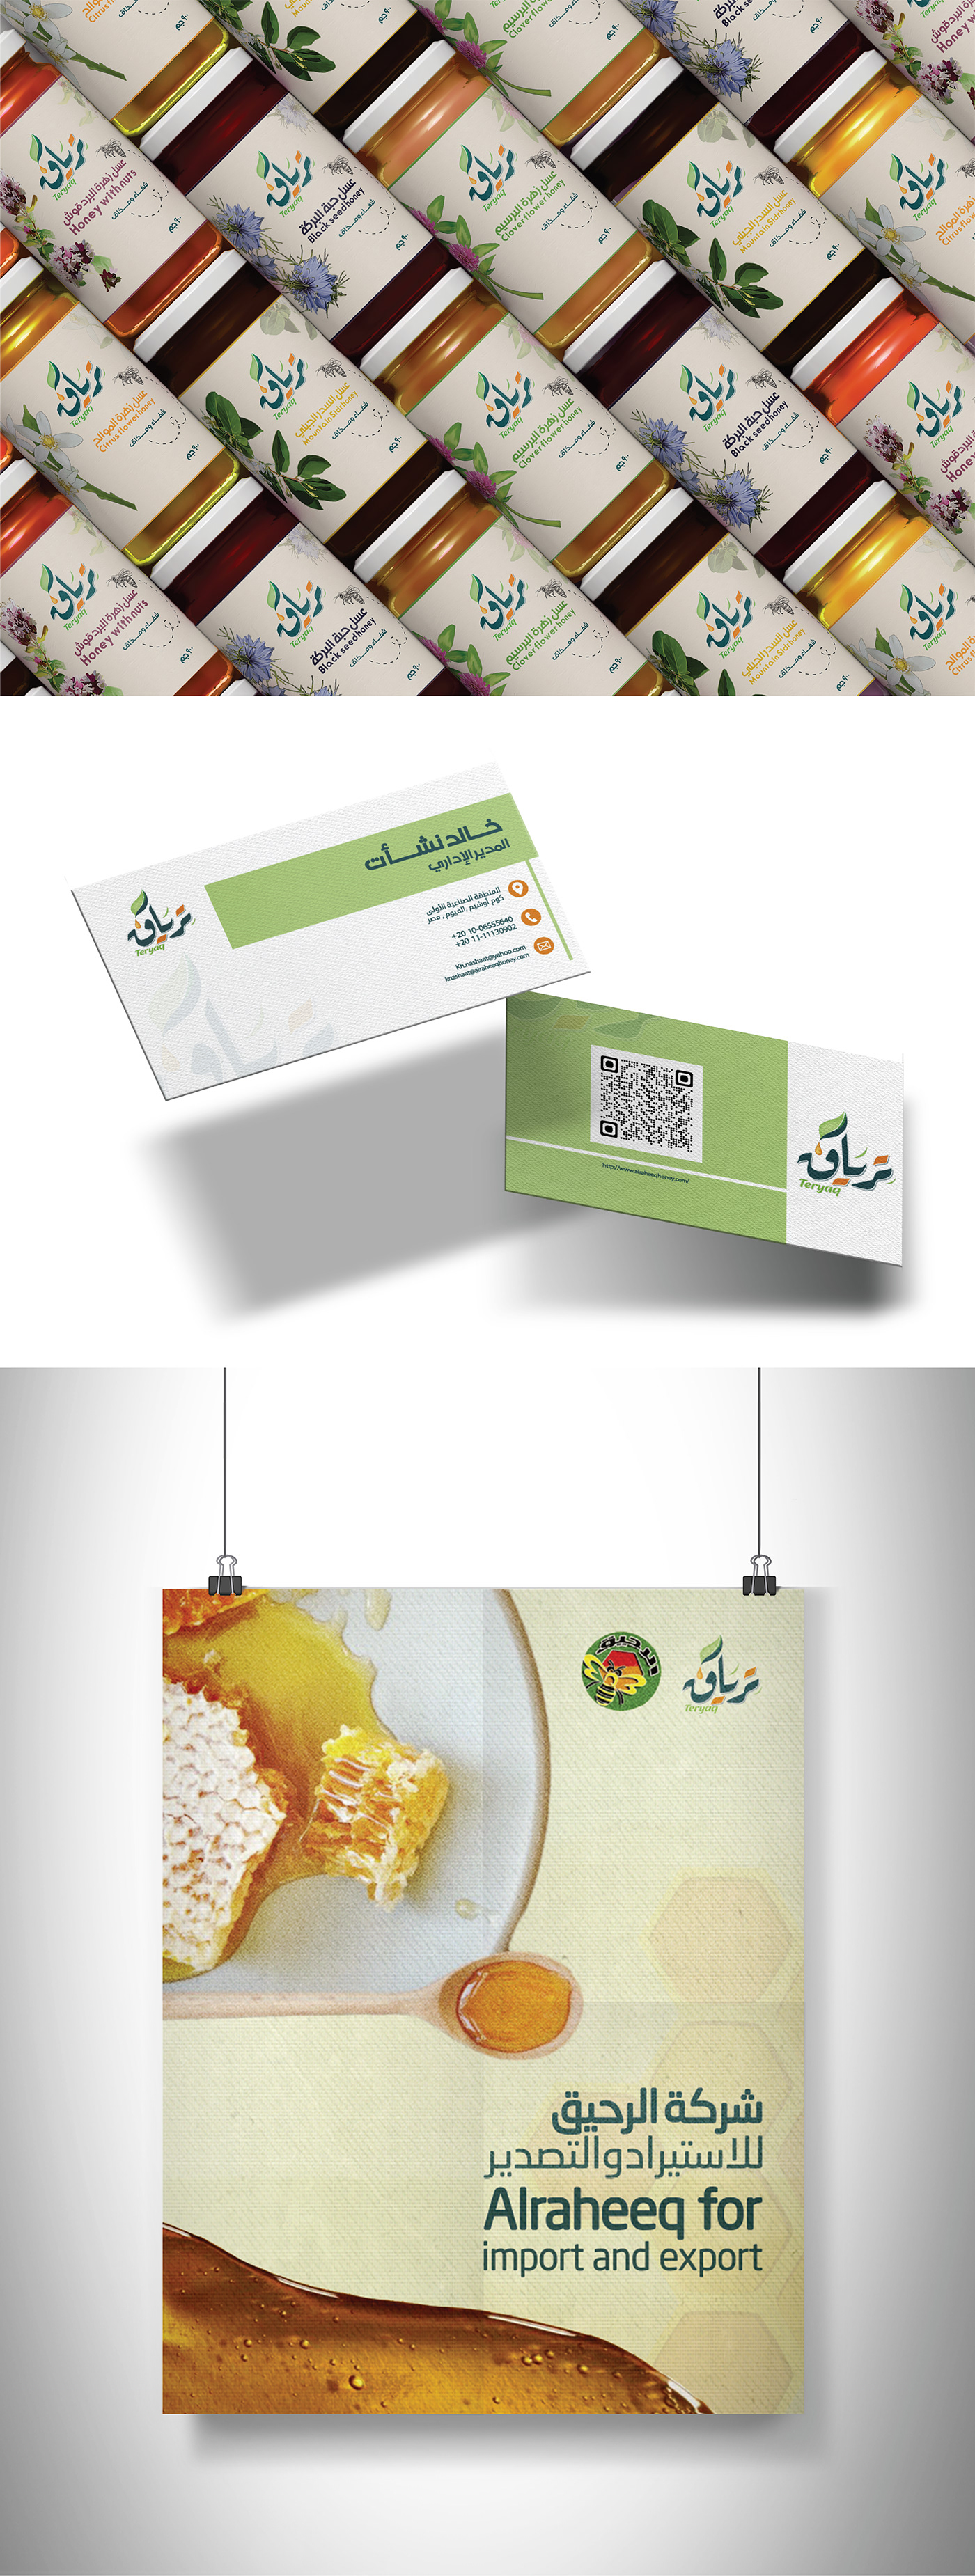 business card honey ILLUSTRATION  Label label design Mockup package design  Packaging packaging design repackaging